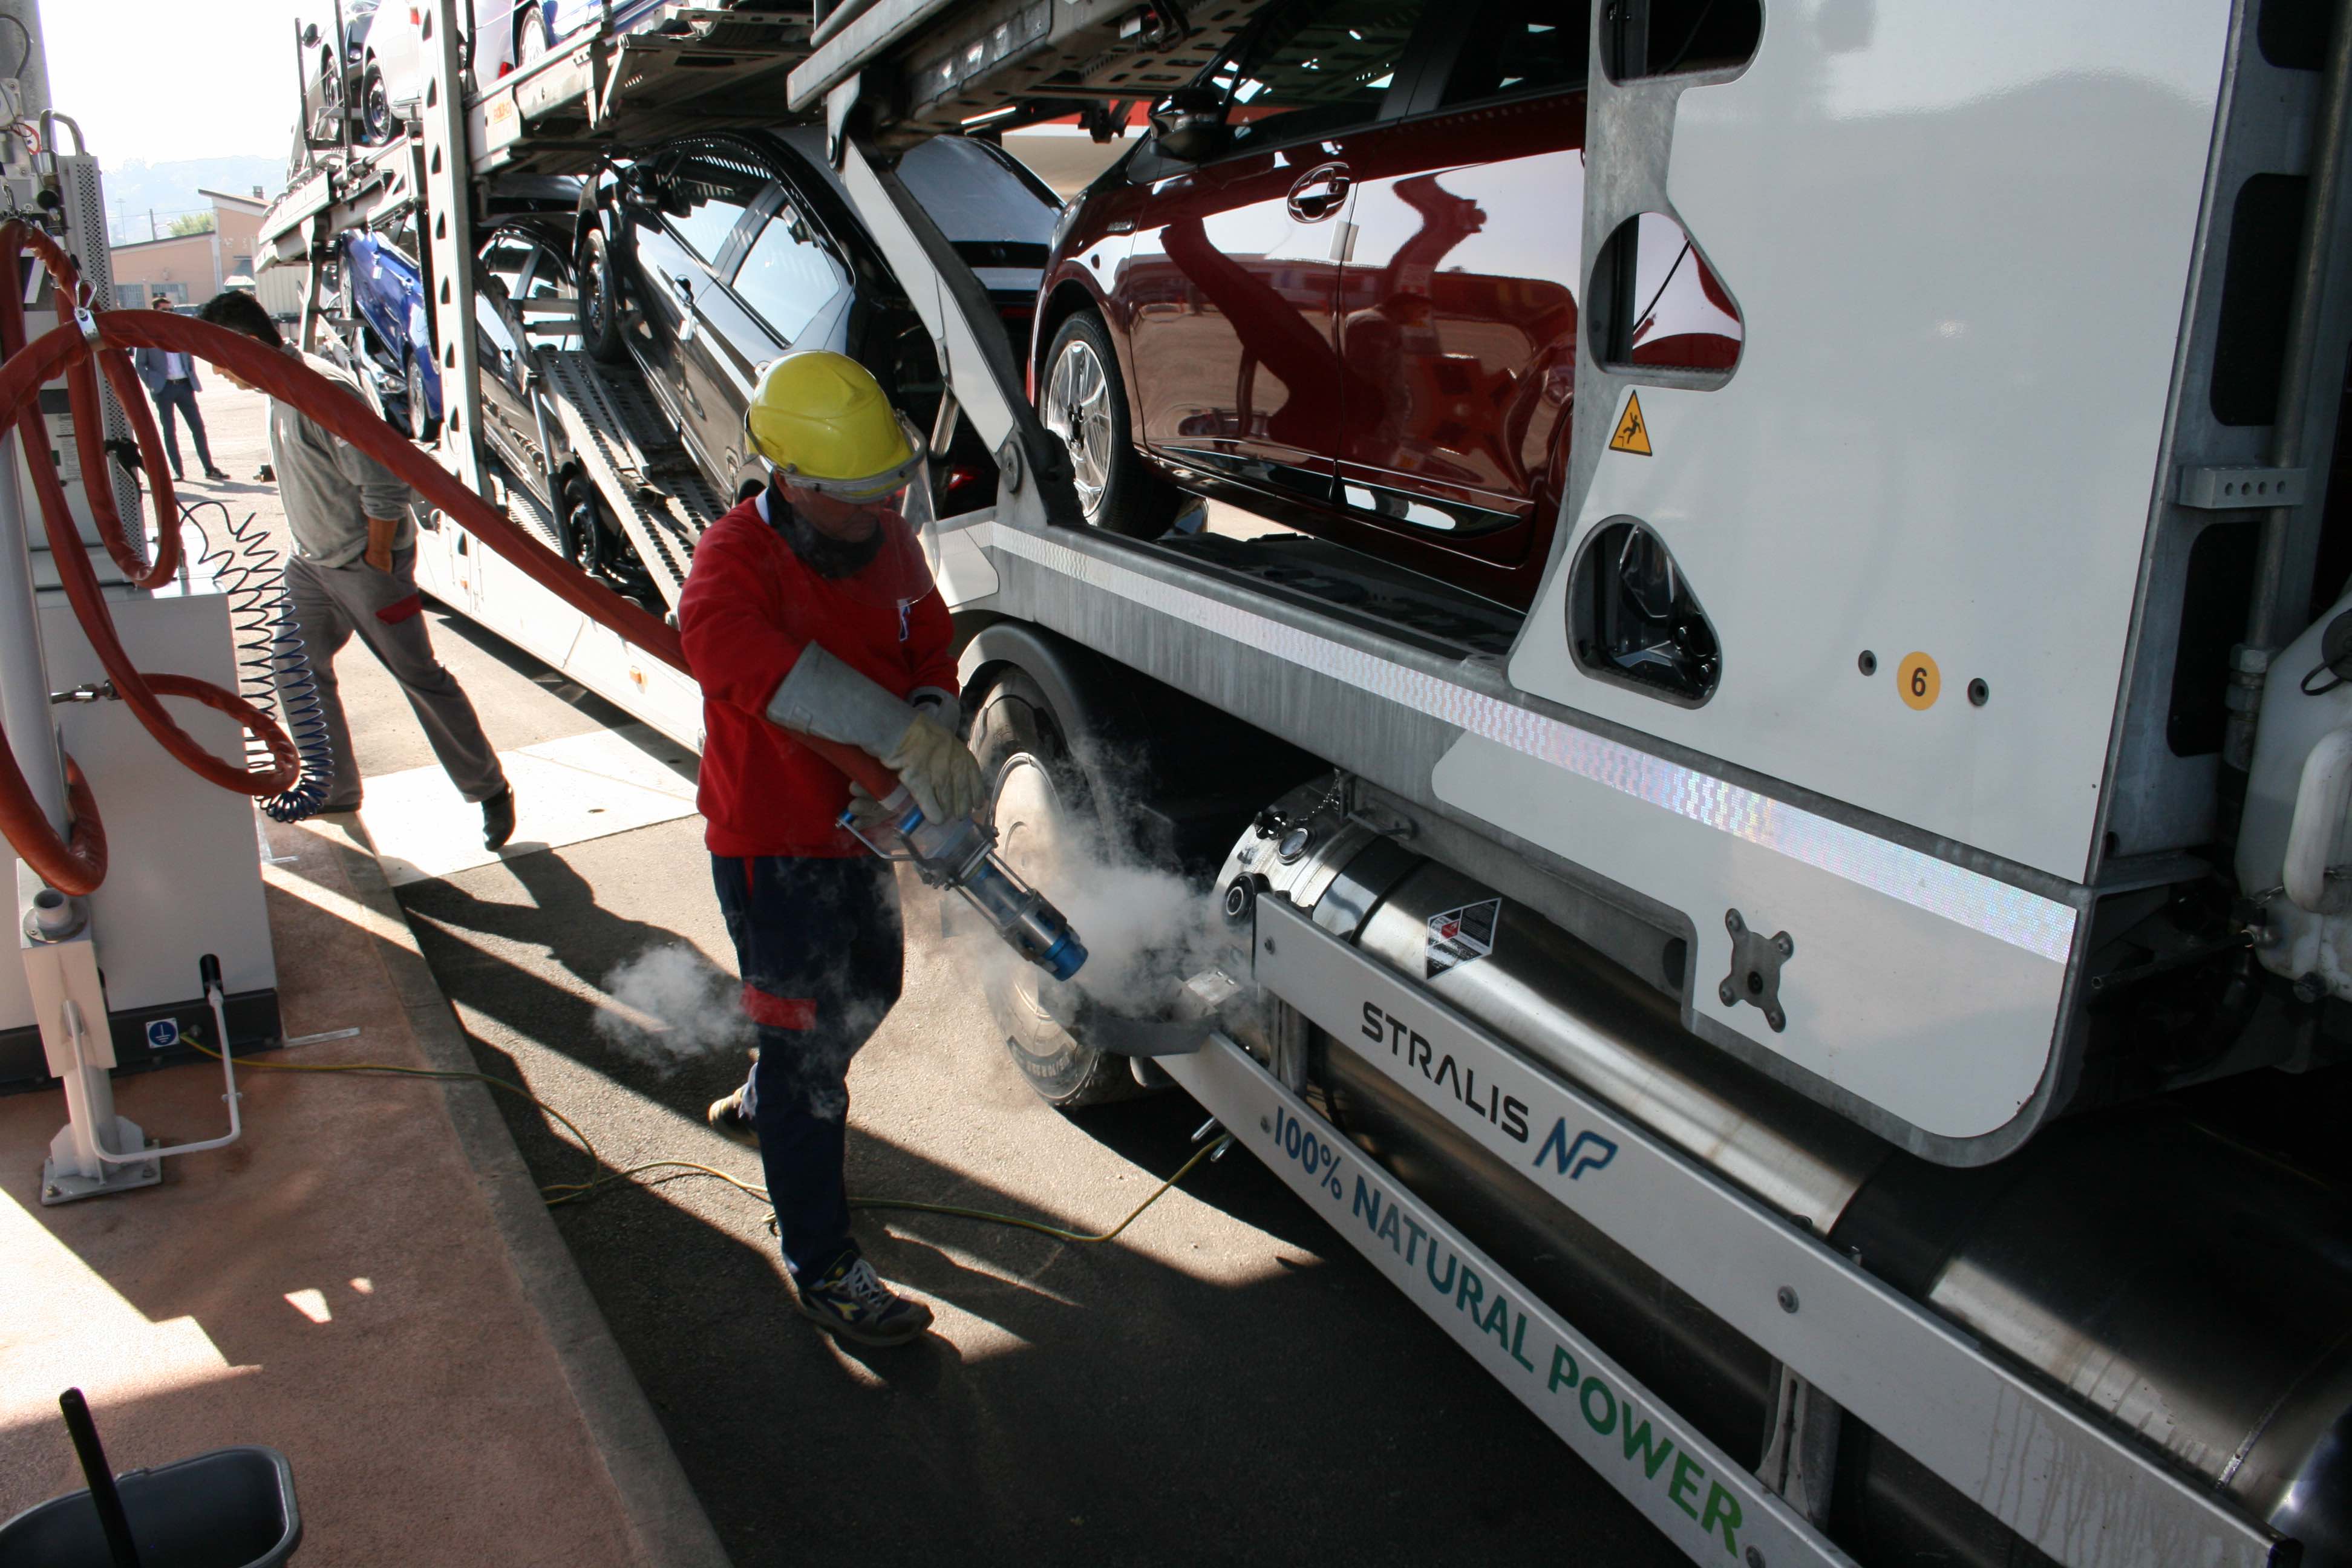 Germania: 'sconto' sul pedaggio per veicoli a gas oltre le 7,5 tonnellate